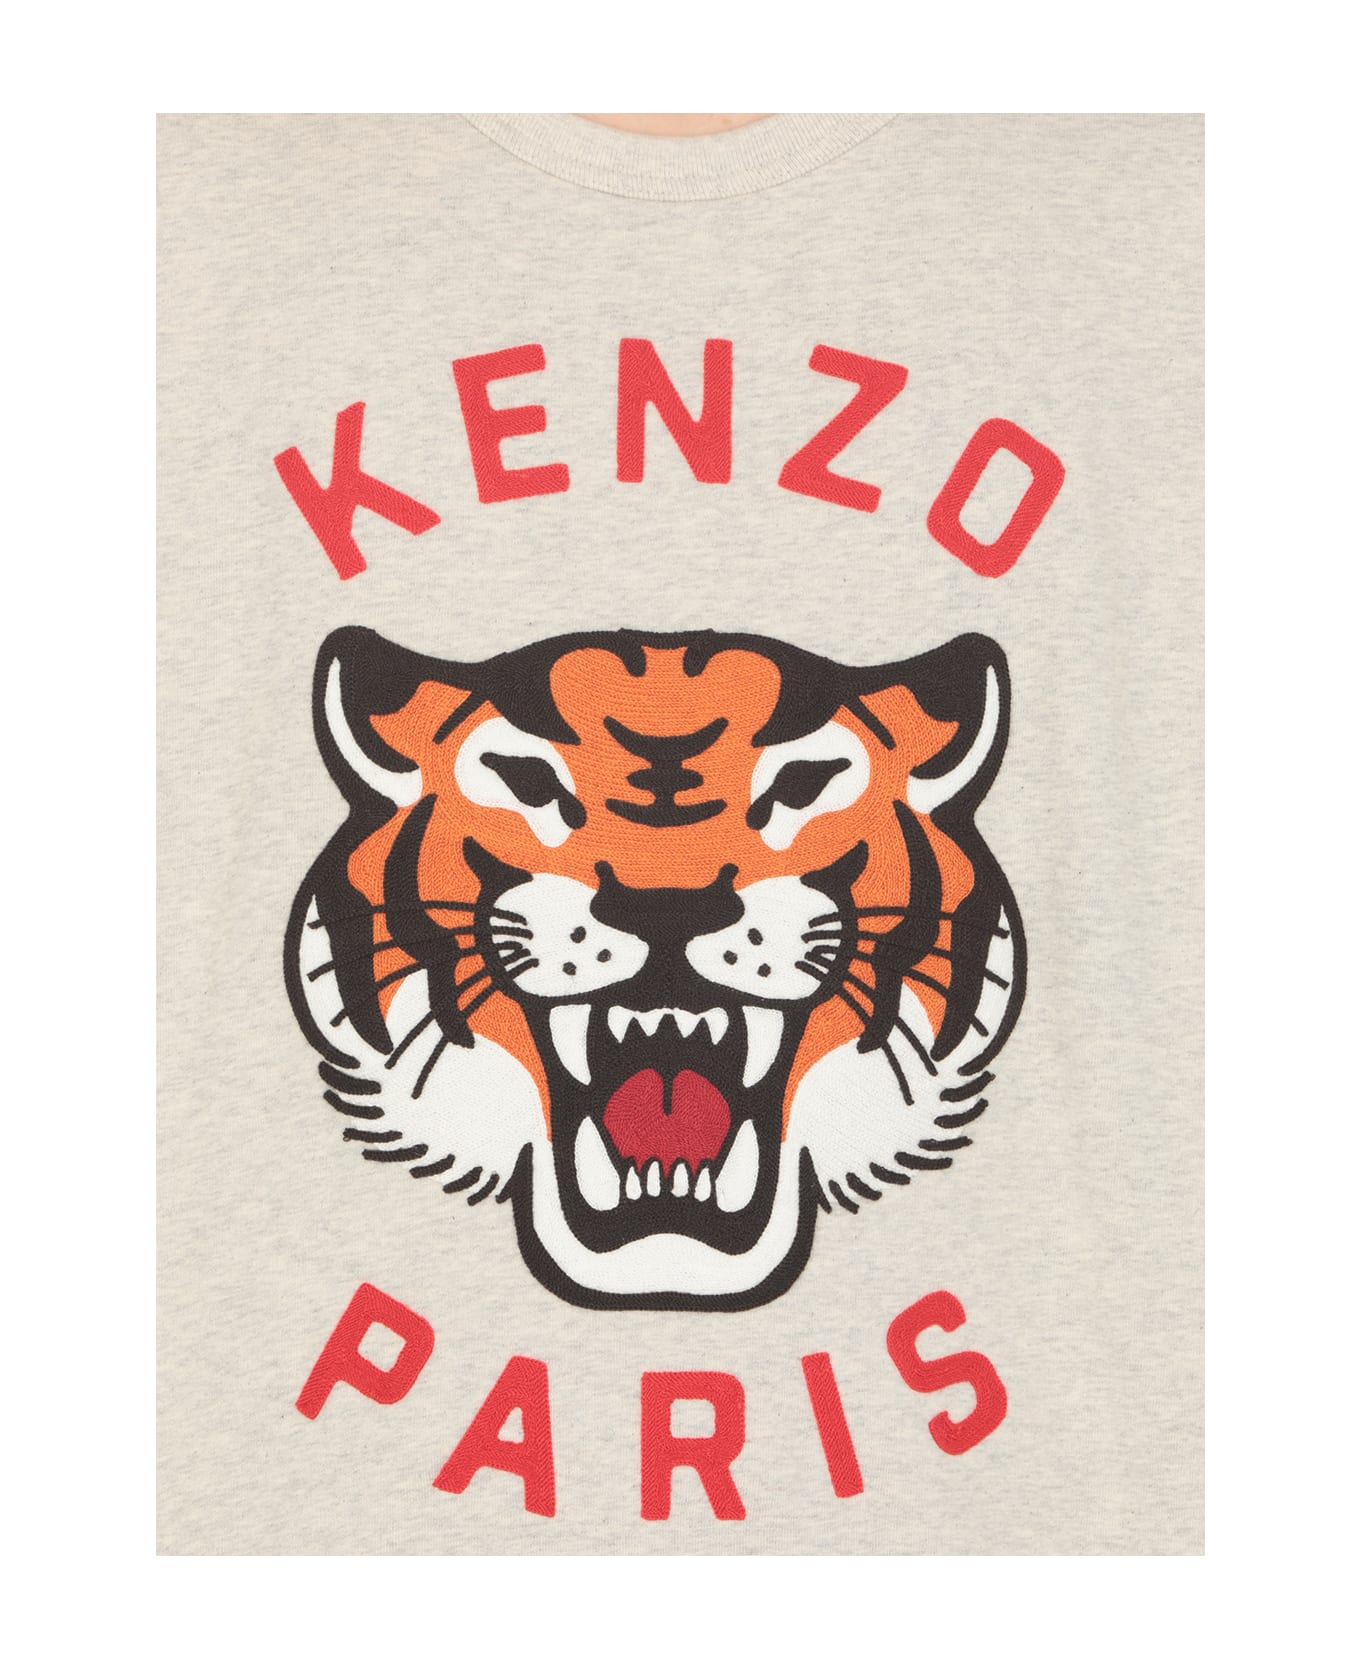 Kenzo Lucky Tiger Sweatshirt - Grey